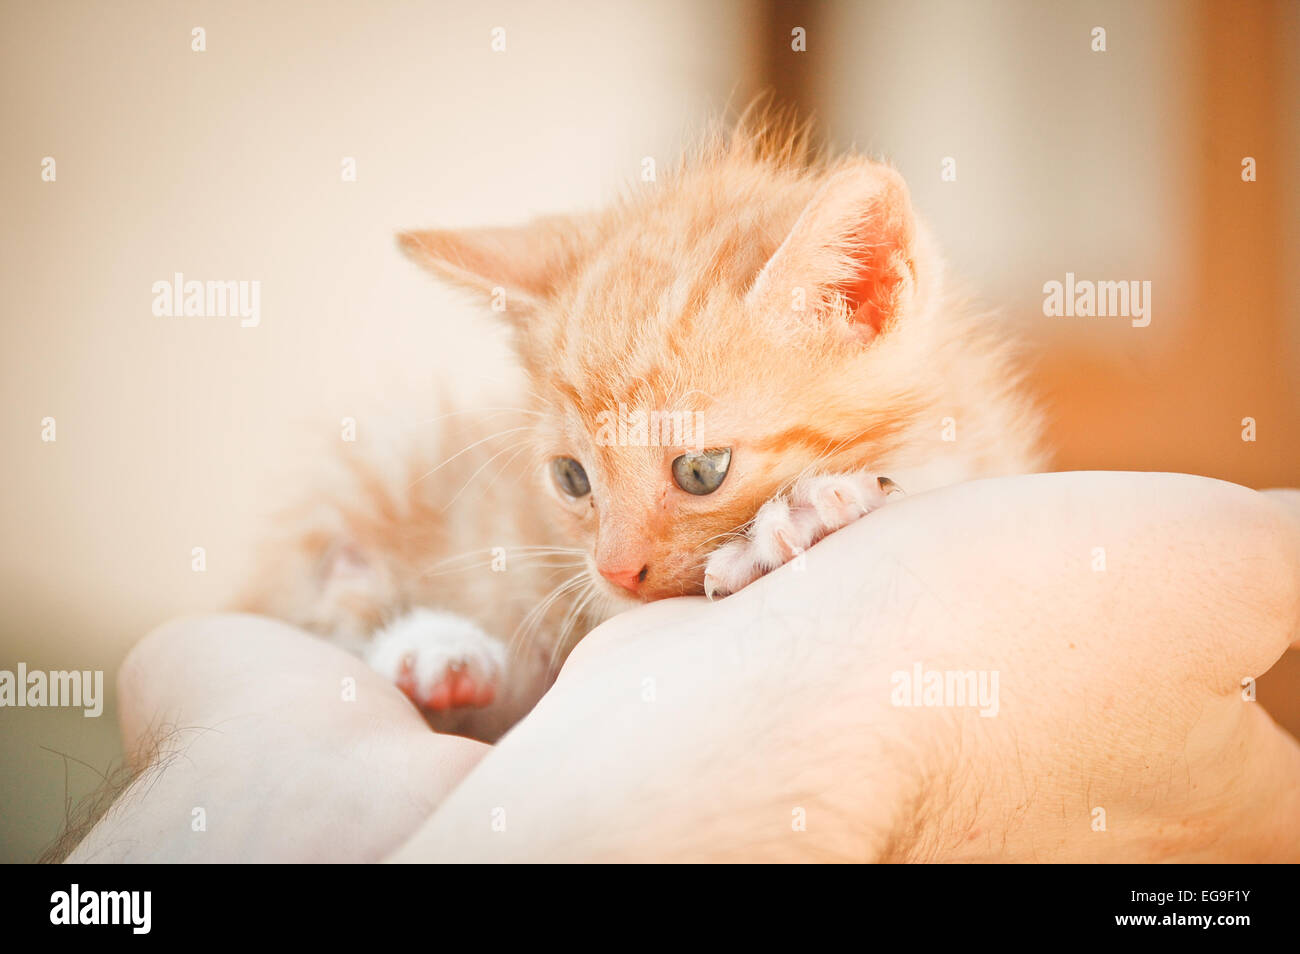 Ginger kitten sur creux des mains Banque D'Images